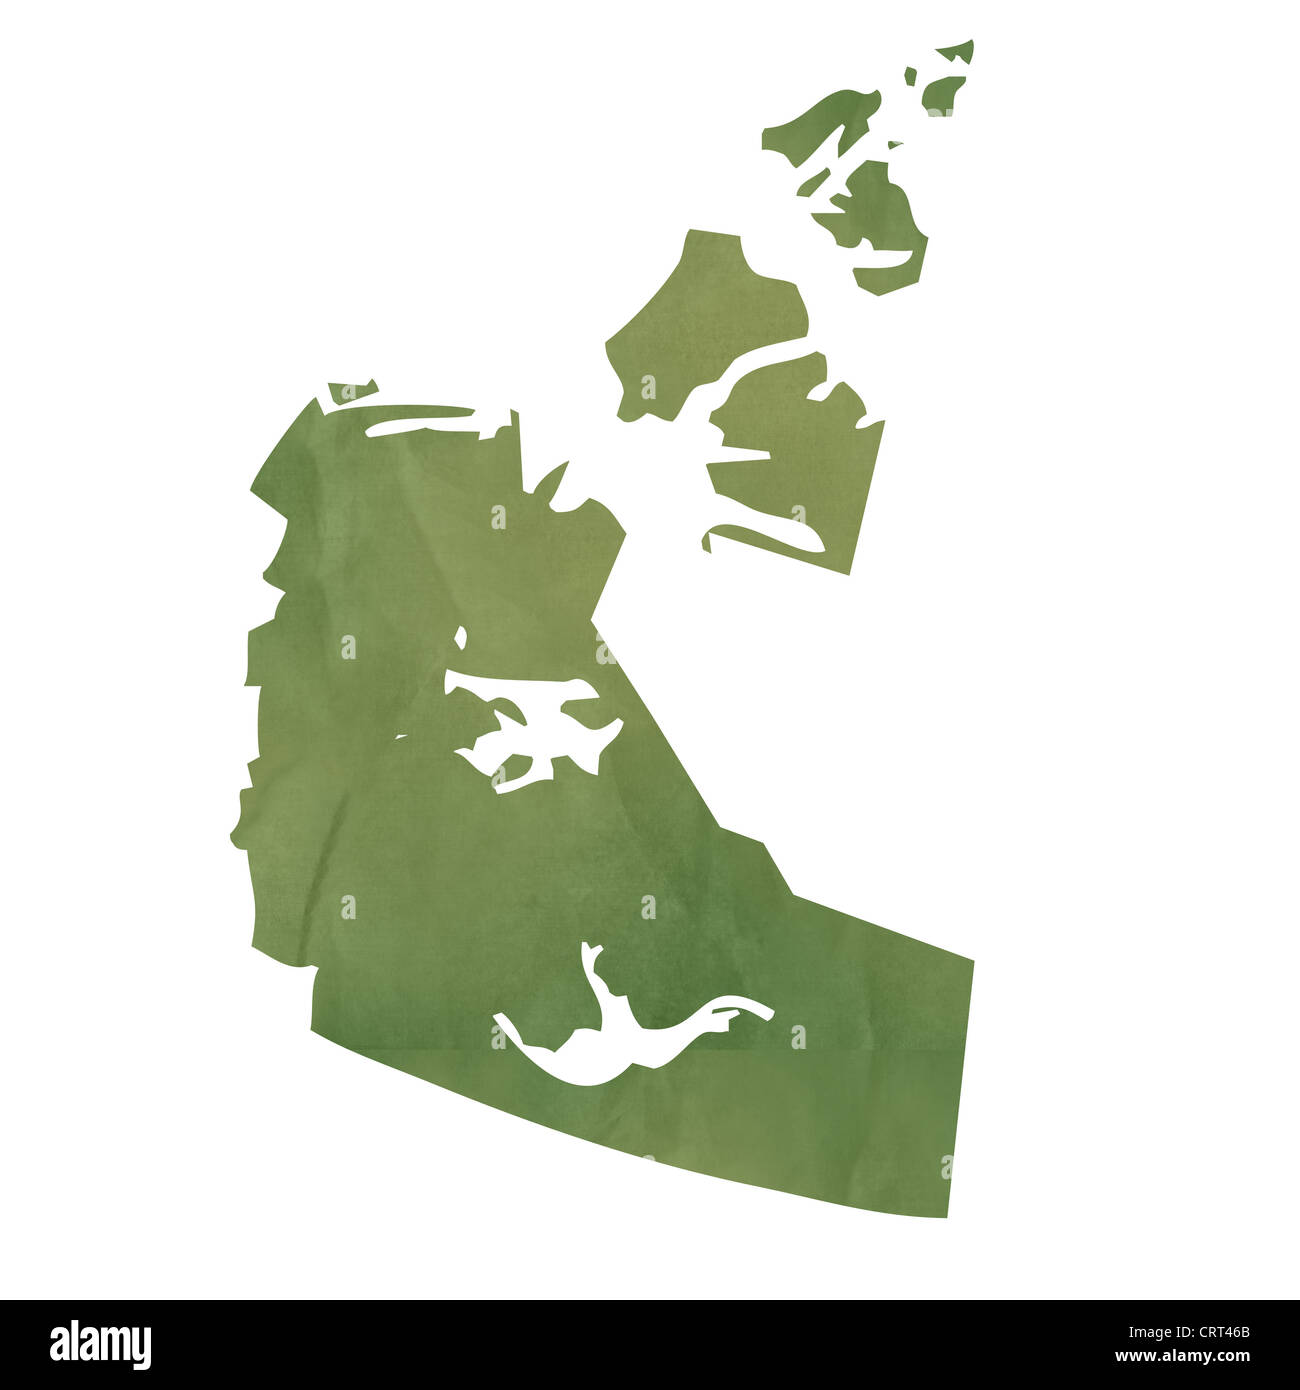 Territorios del Noroeste provincia de Canadá mapa en papel viejo verde aislado sobre fondo blanco. Foto de stock